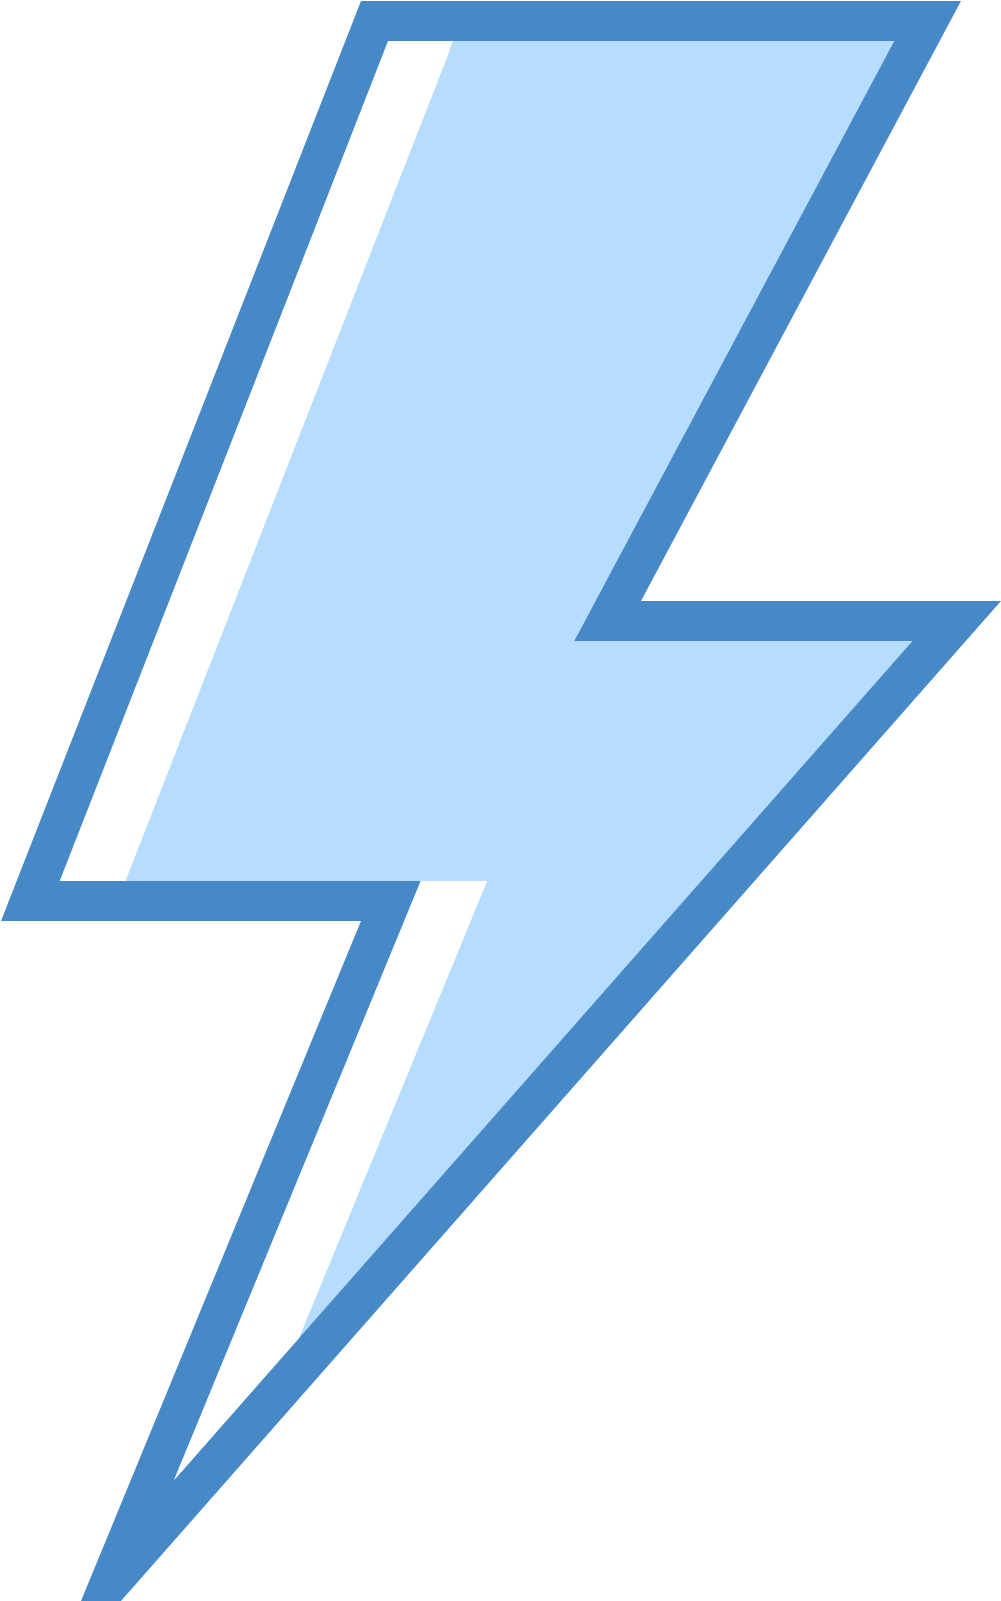 Lightning Bolt Graphic PNG image